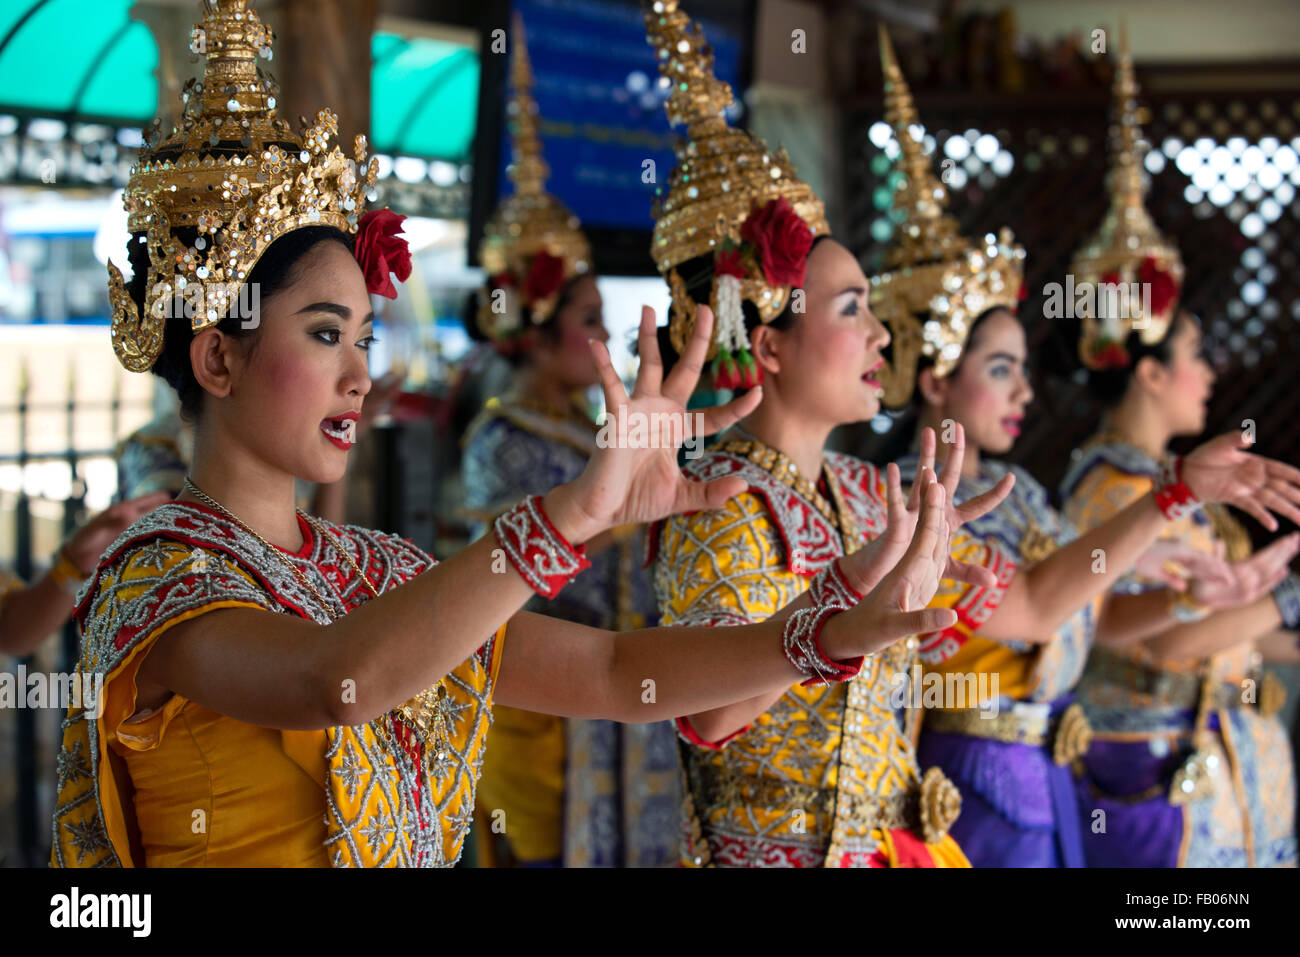 Danseurs dans sanctuaire d'Erawan. Bangkok. La Thaïlande. Sanctuaire d'Erawan à Bangkok est Brahman, pas strictement Bouddhiste. Et pourtant, ce fameux sh Banque D'Images